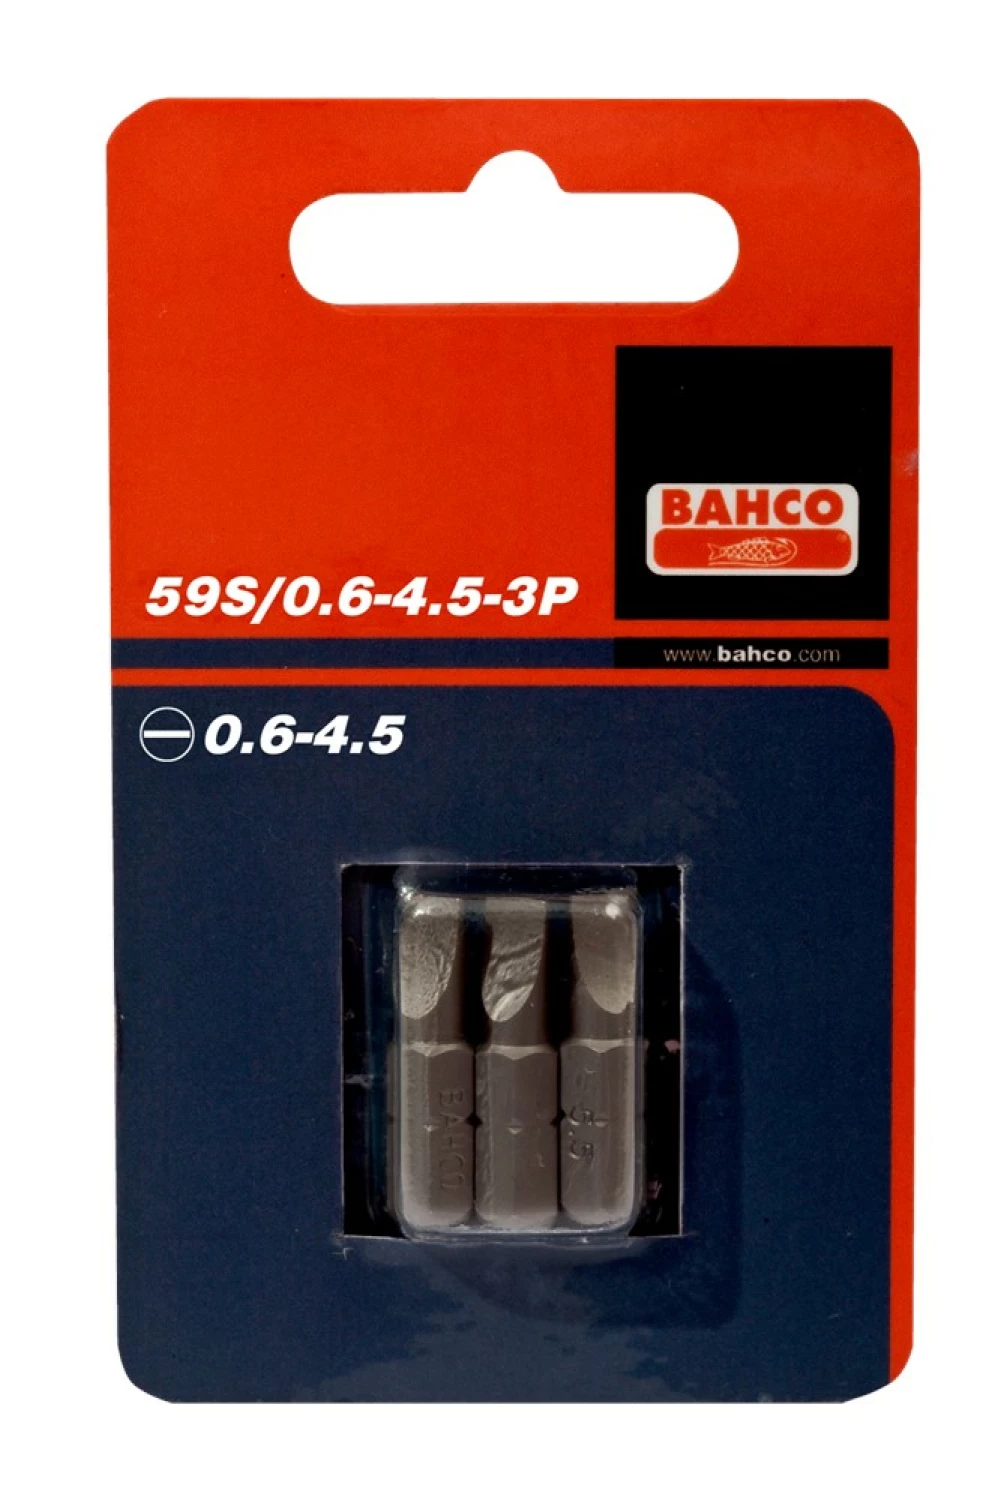 Bahco 59S/0.6-4.5-3P - Embouts de tournevis 1/4" standard pour vis à fente, 25 mm